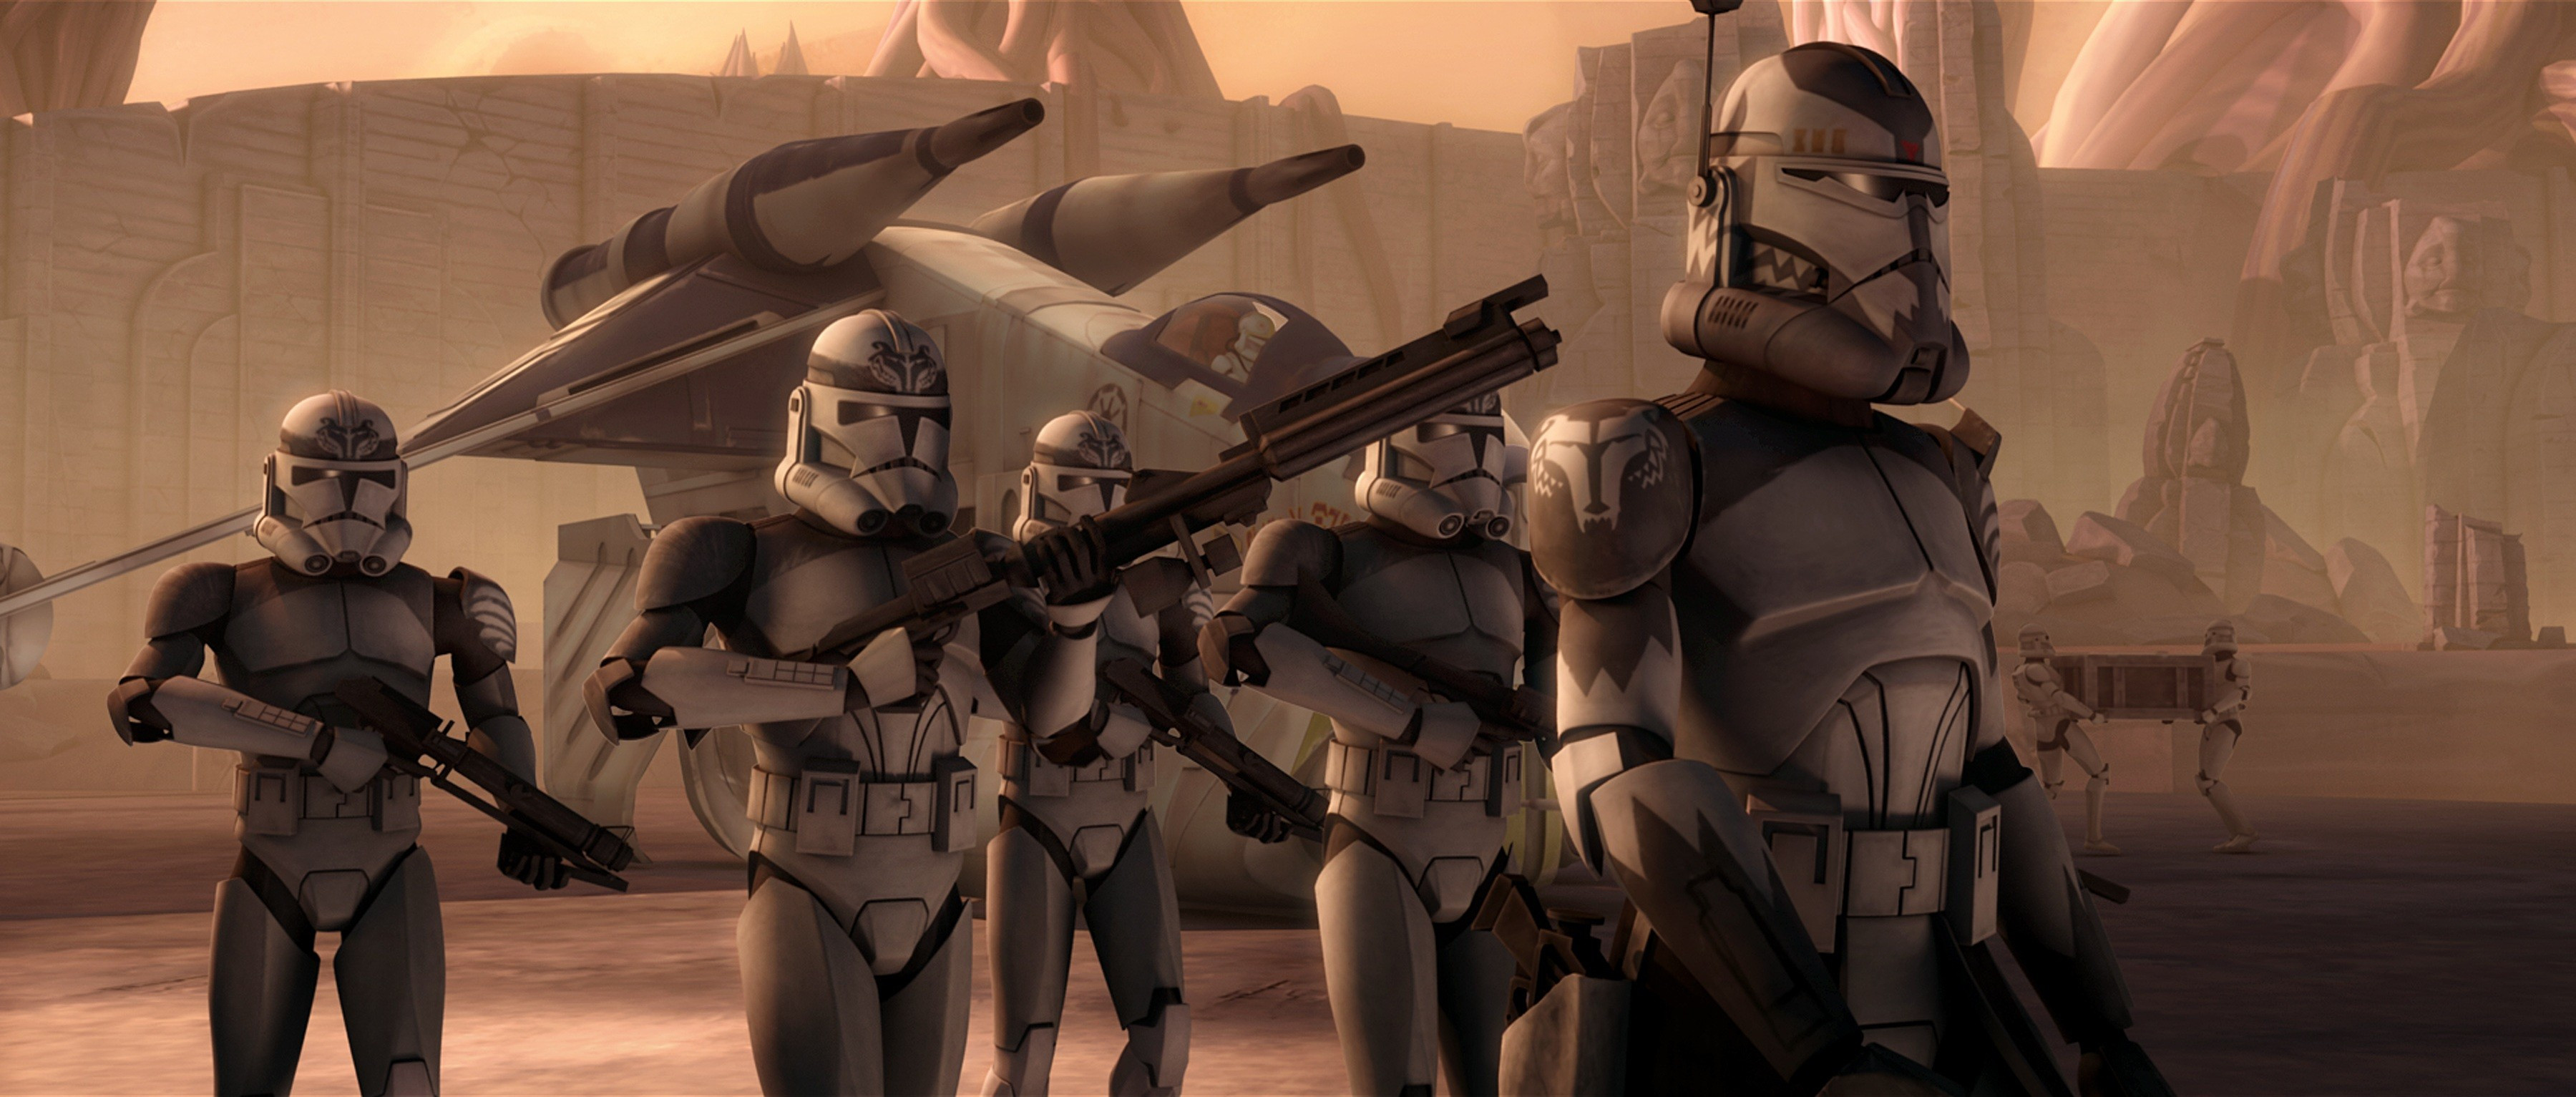 3600x1533 #Star Wars, #clone trooper, wallpaper